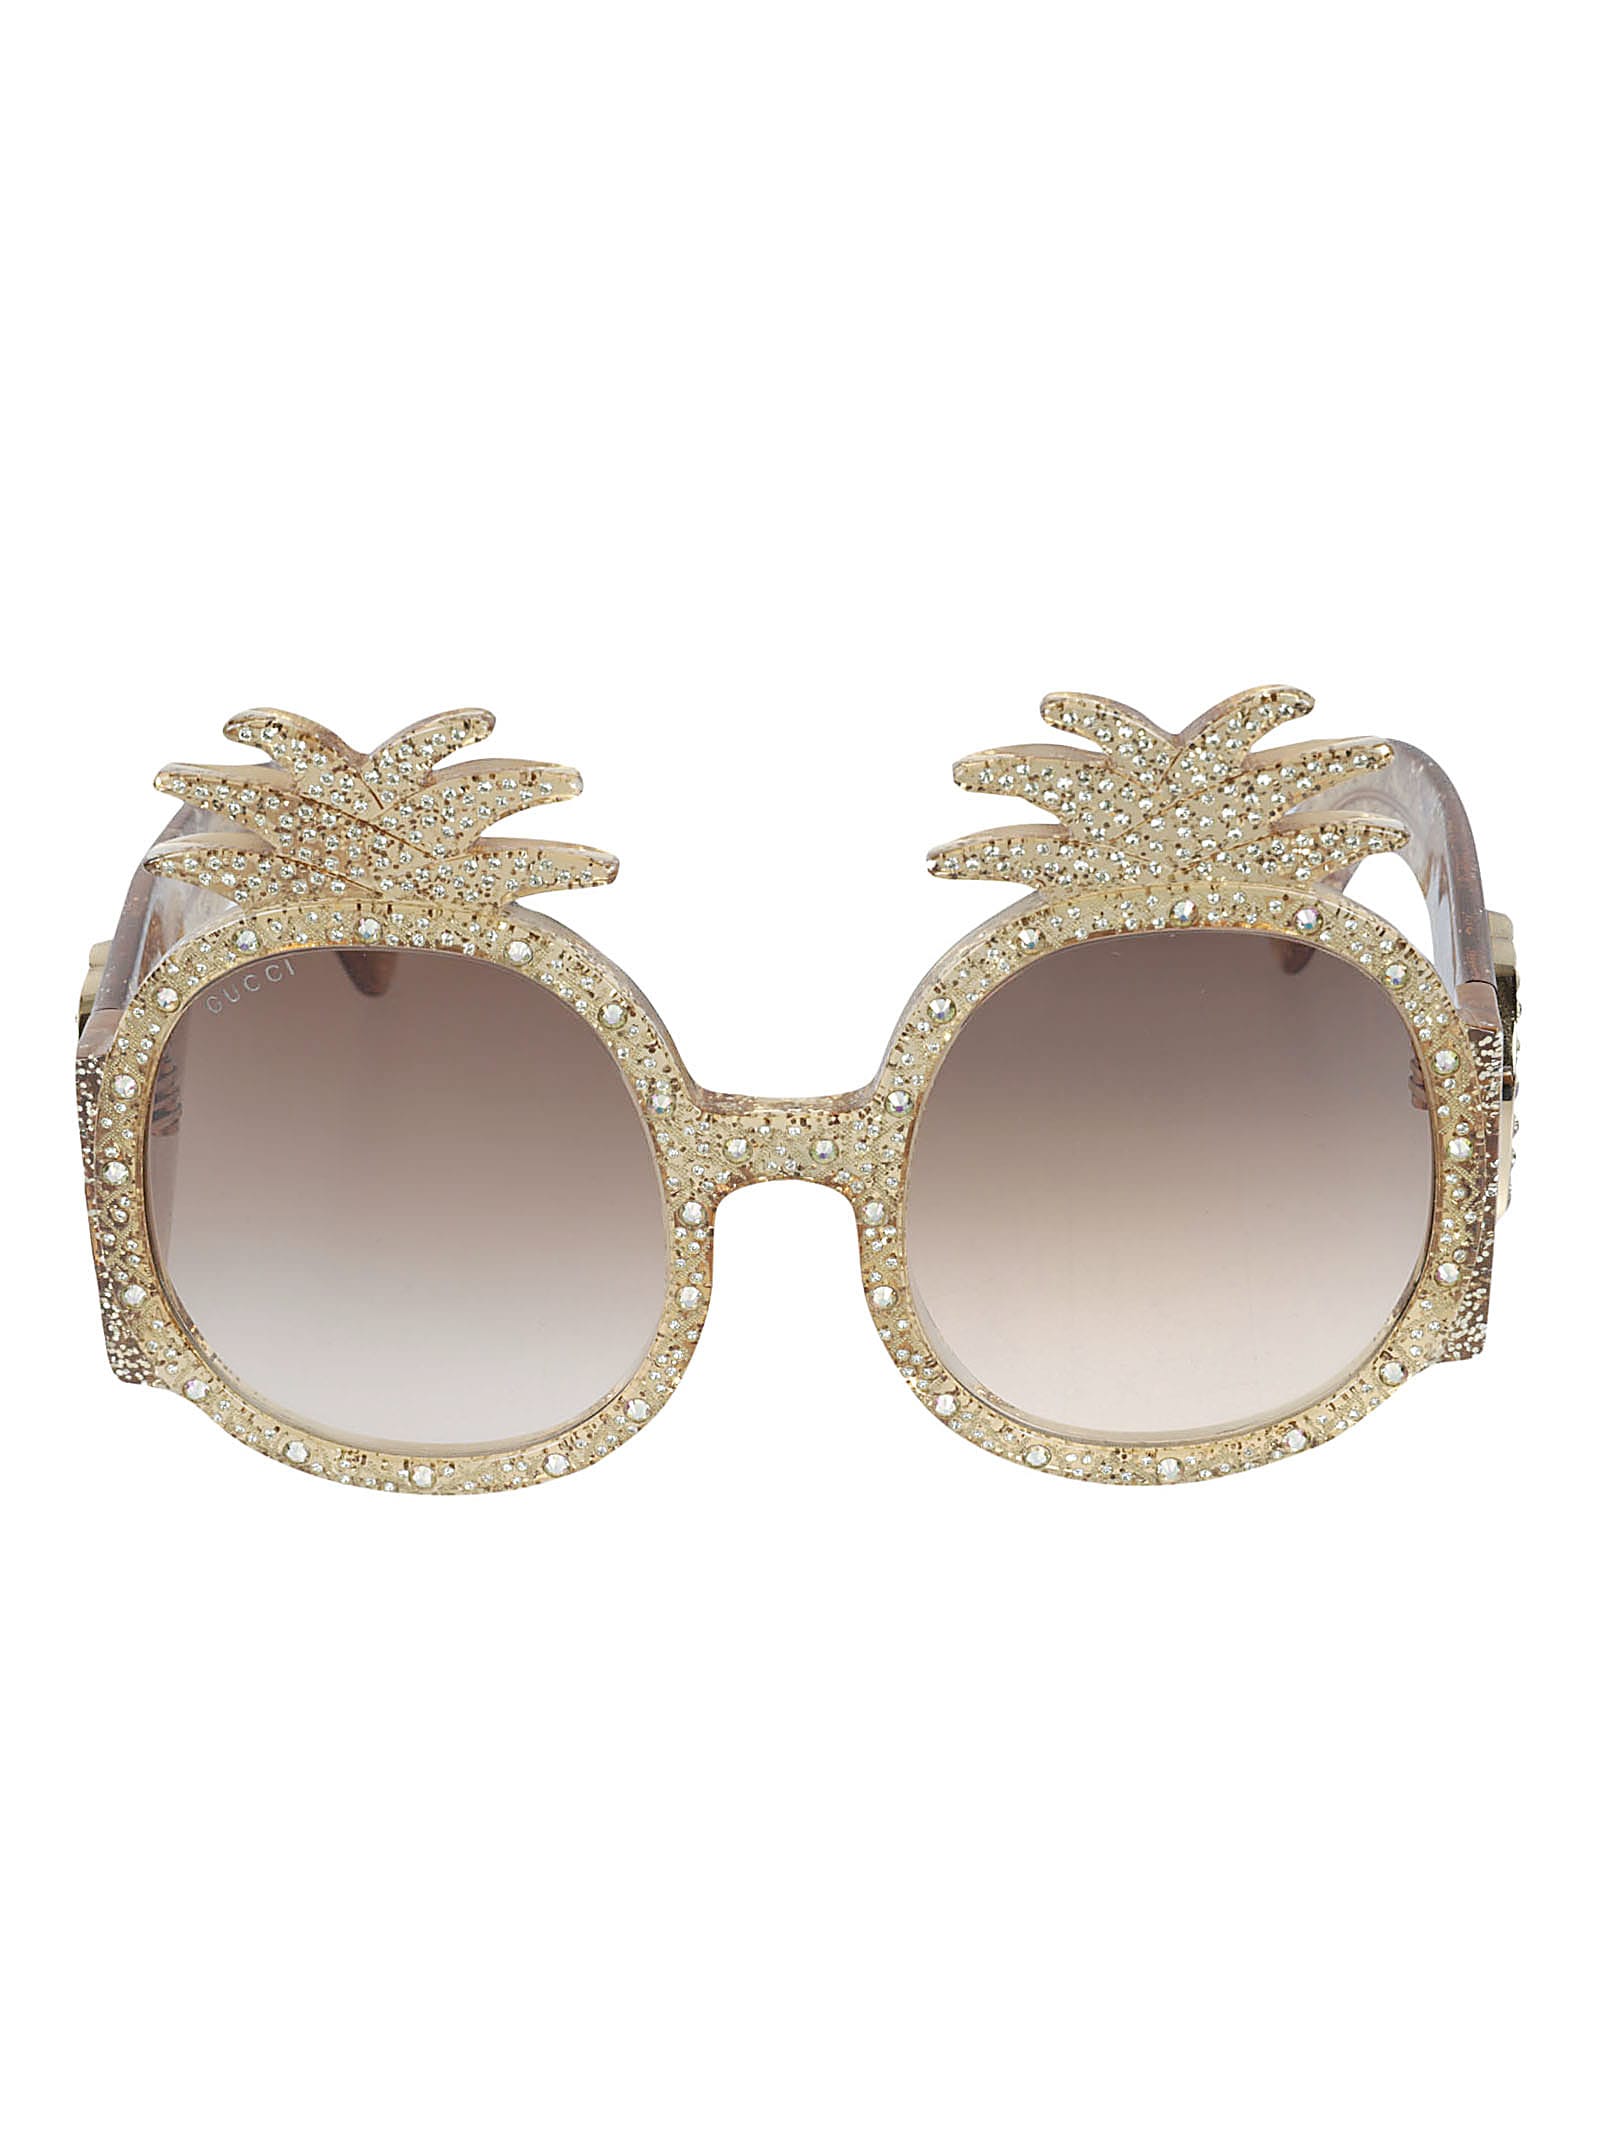 Gucci Embellished Frame Sunglasses